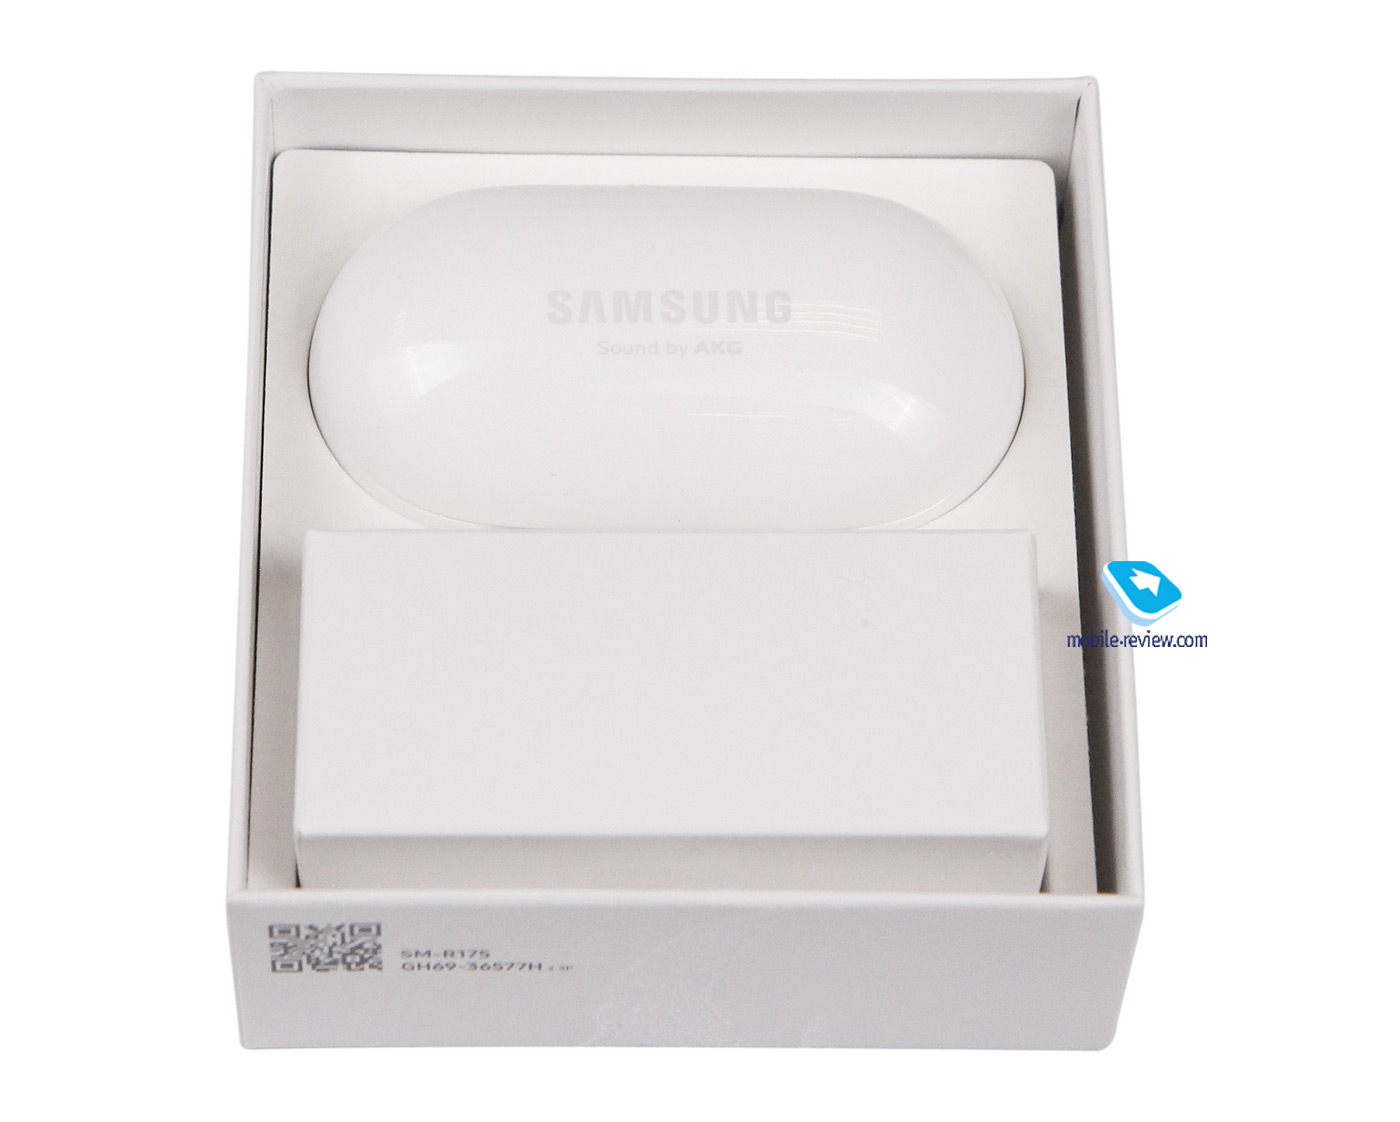    Samsung Galaxy Buds+ (SM-R175)